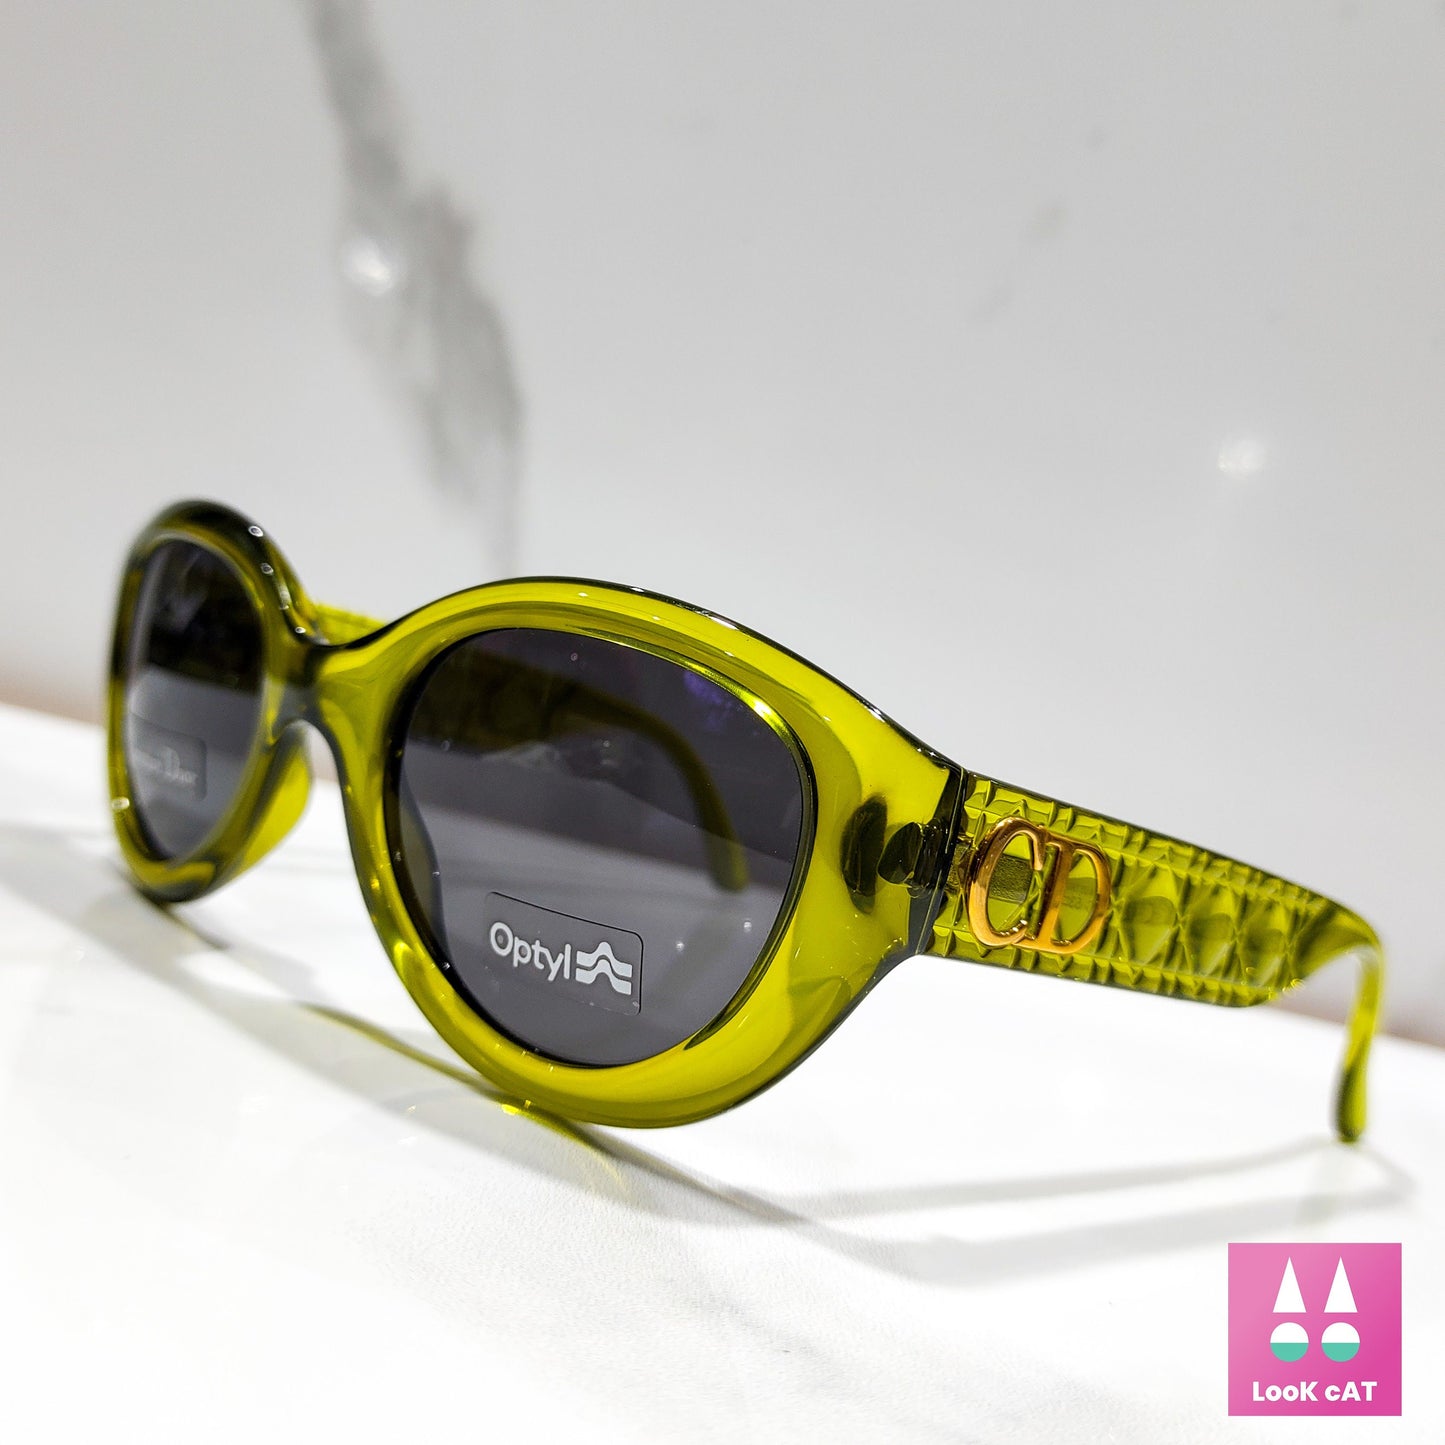 Christian Dior mod AUDREY occhiali da sole vintage occhiali gafas y2k cat Eye anni '90